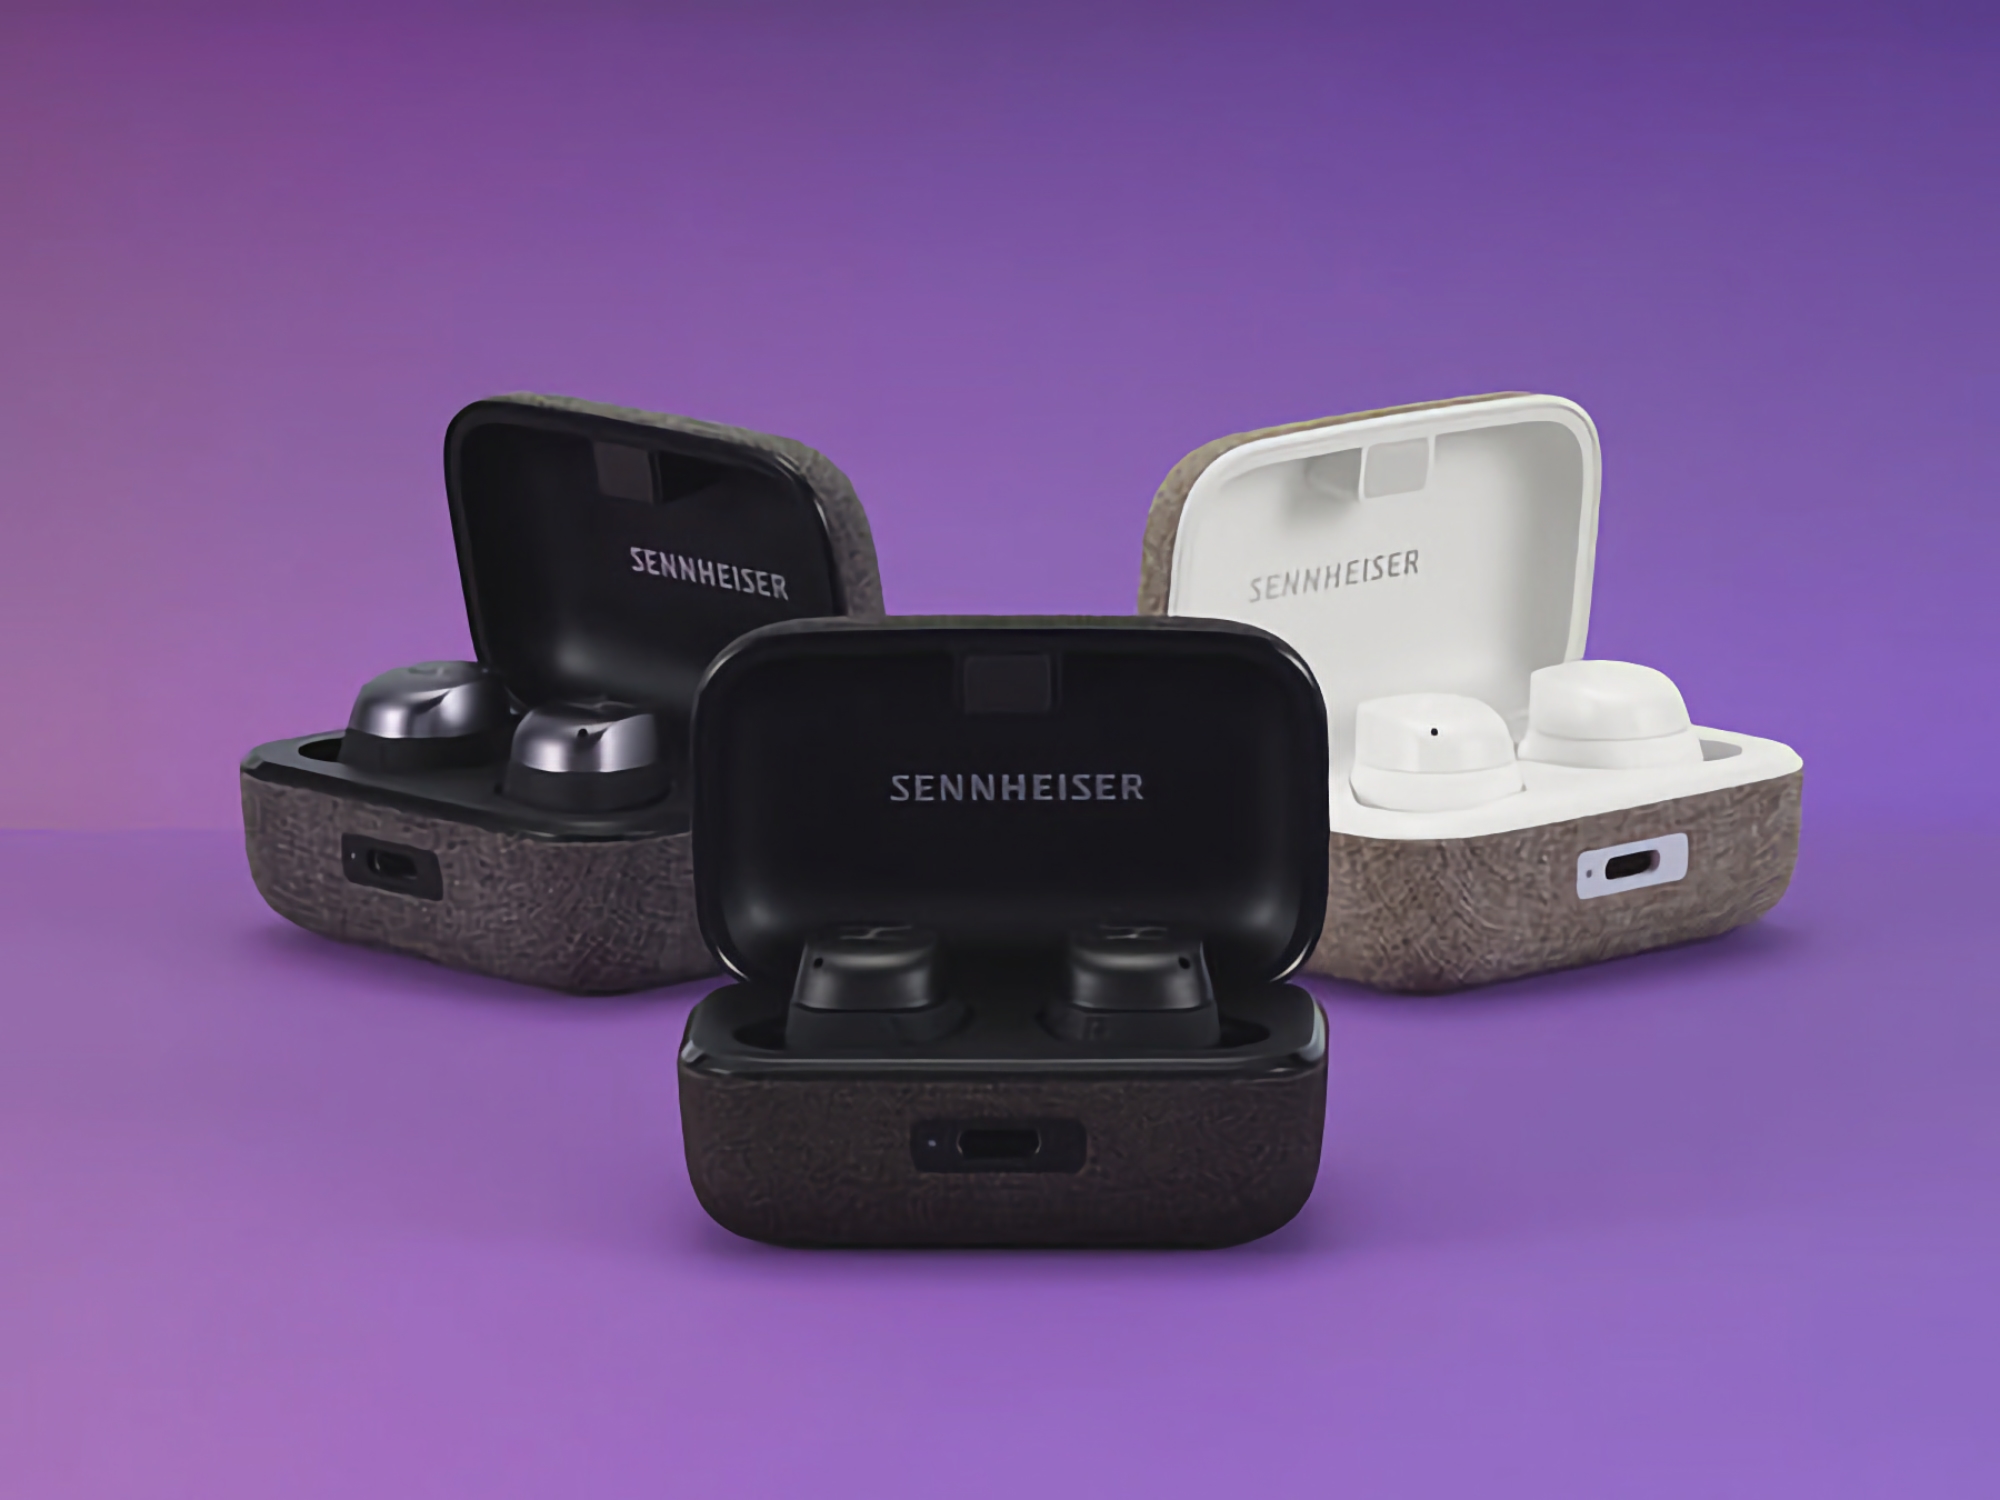 Le Sennheiser MOMENTUM True Wireless 3 est disponible sur Amazon pour 142$ (137$ de réduction)